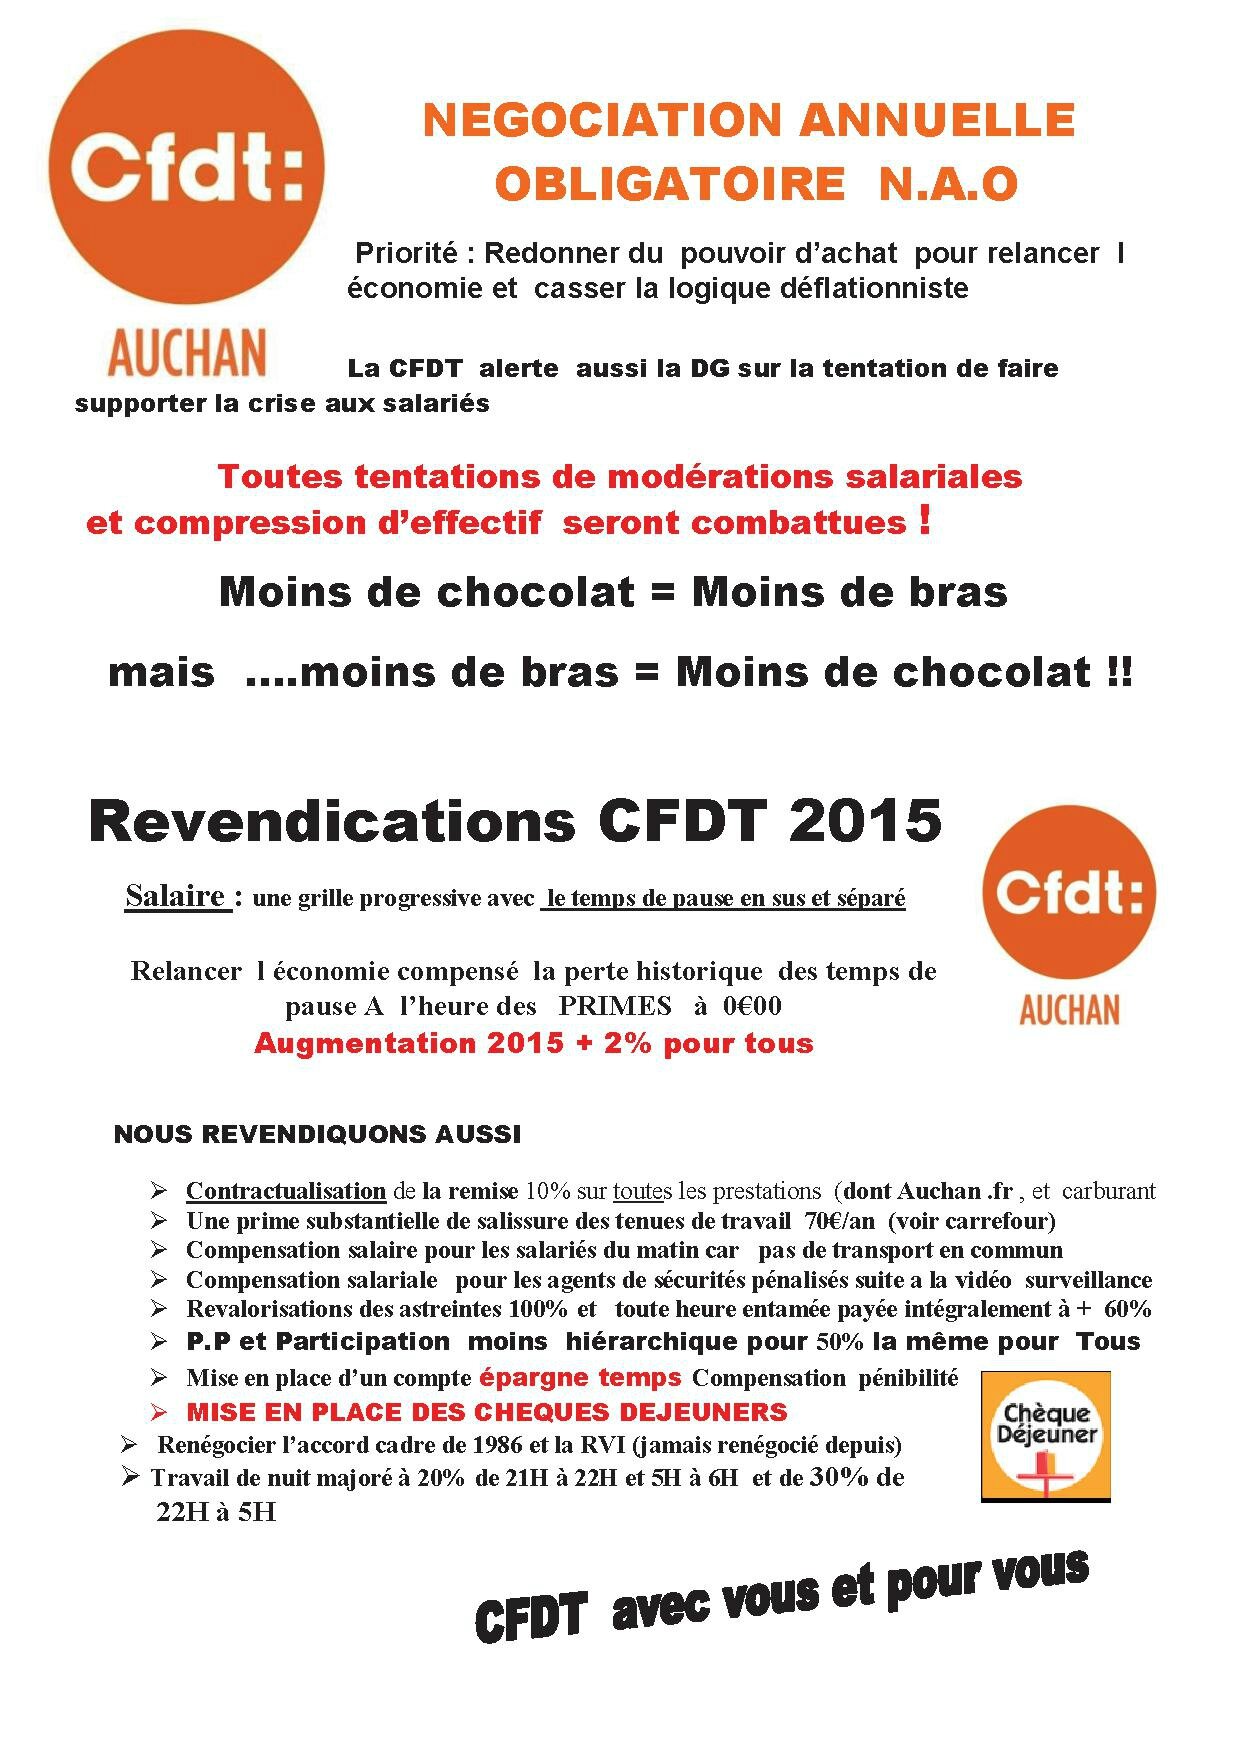 Les Revendications Cfdt Annuelles 15 La Cfdt Nationale Auchan Vous Informe